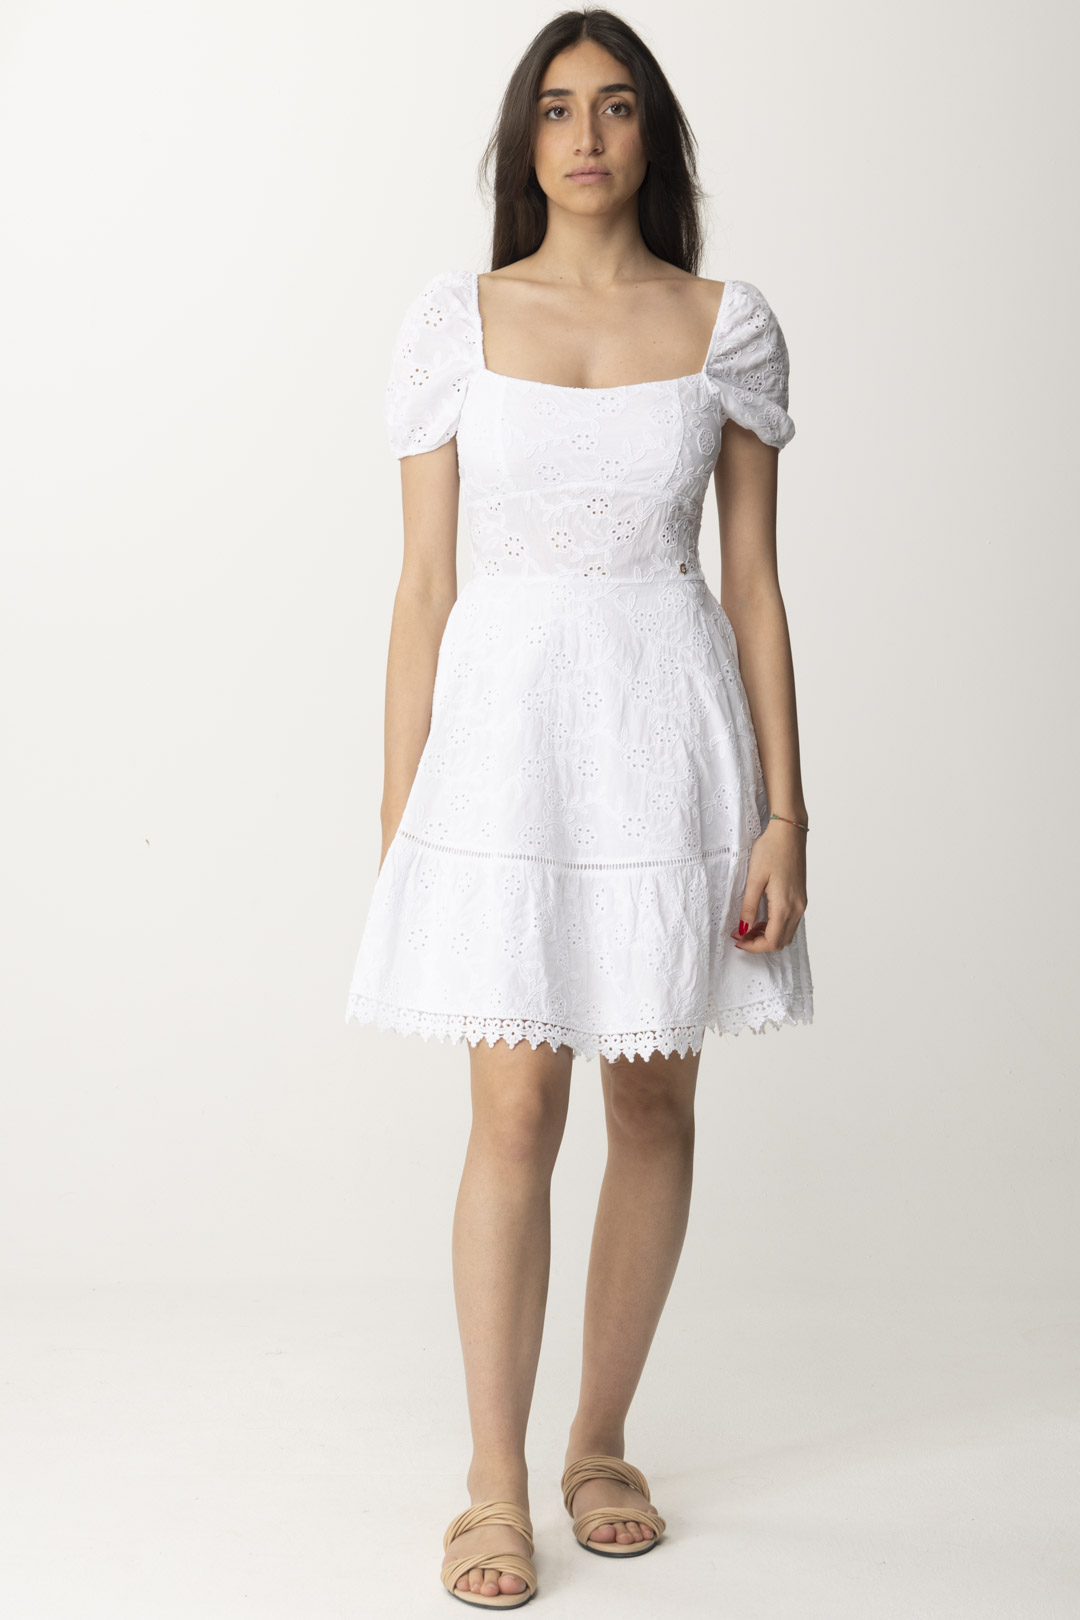 Anteprima: Guess Mini dress in sangallo Pure White